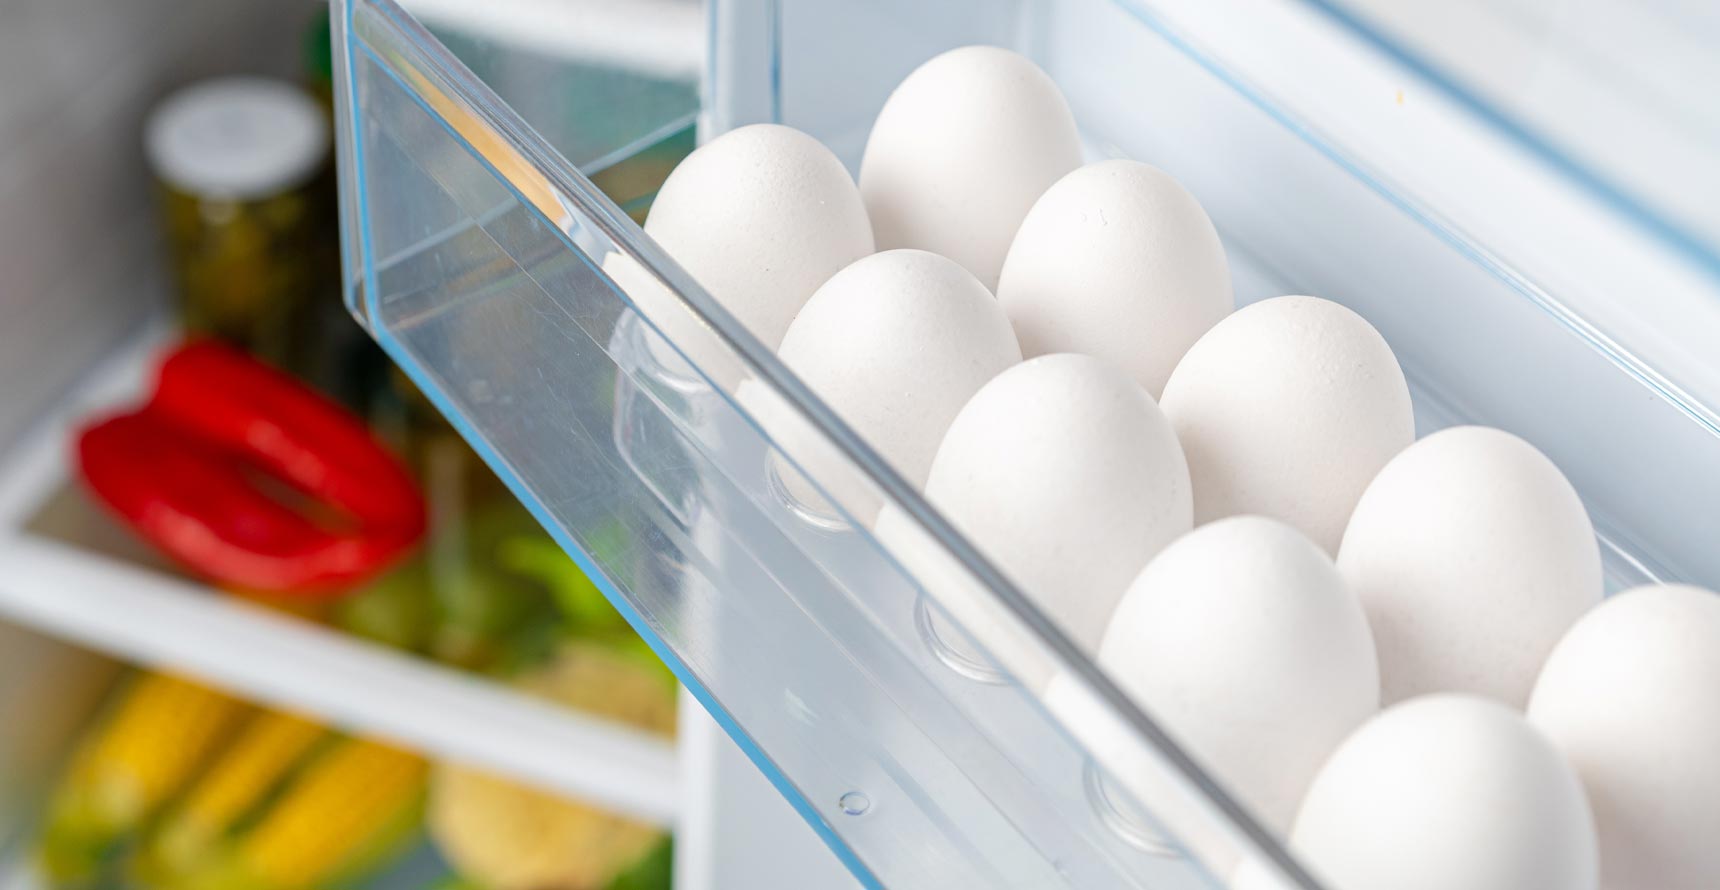 Vječna dilemma: treba li jaja prati prije upotrebe i da li ih skladištiti u vratima frižidera?!